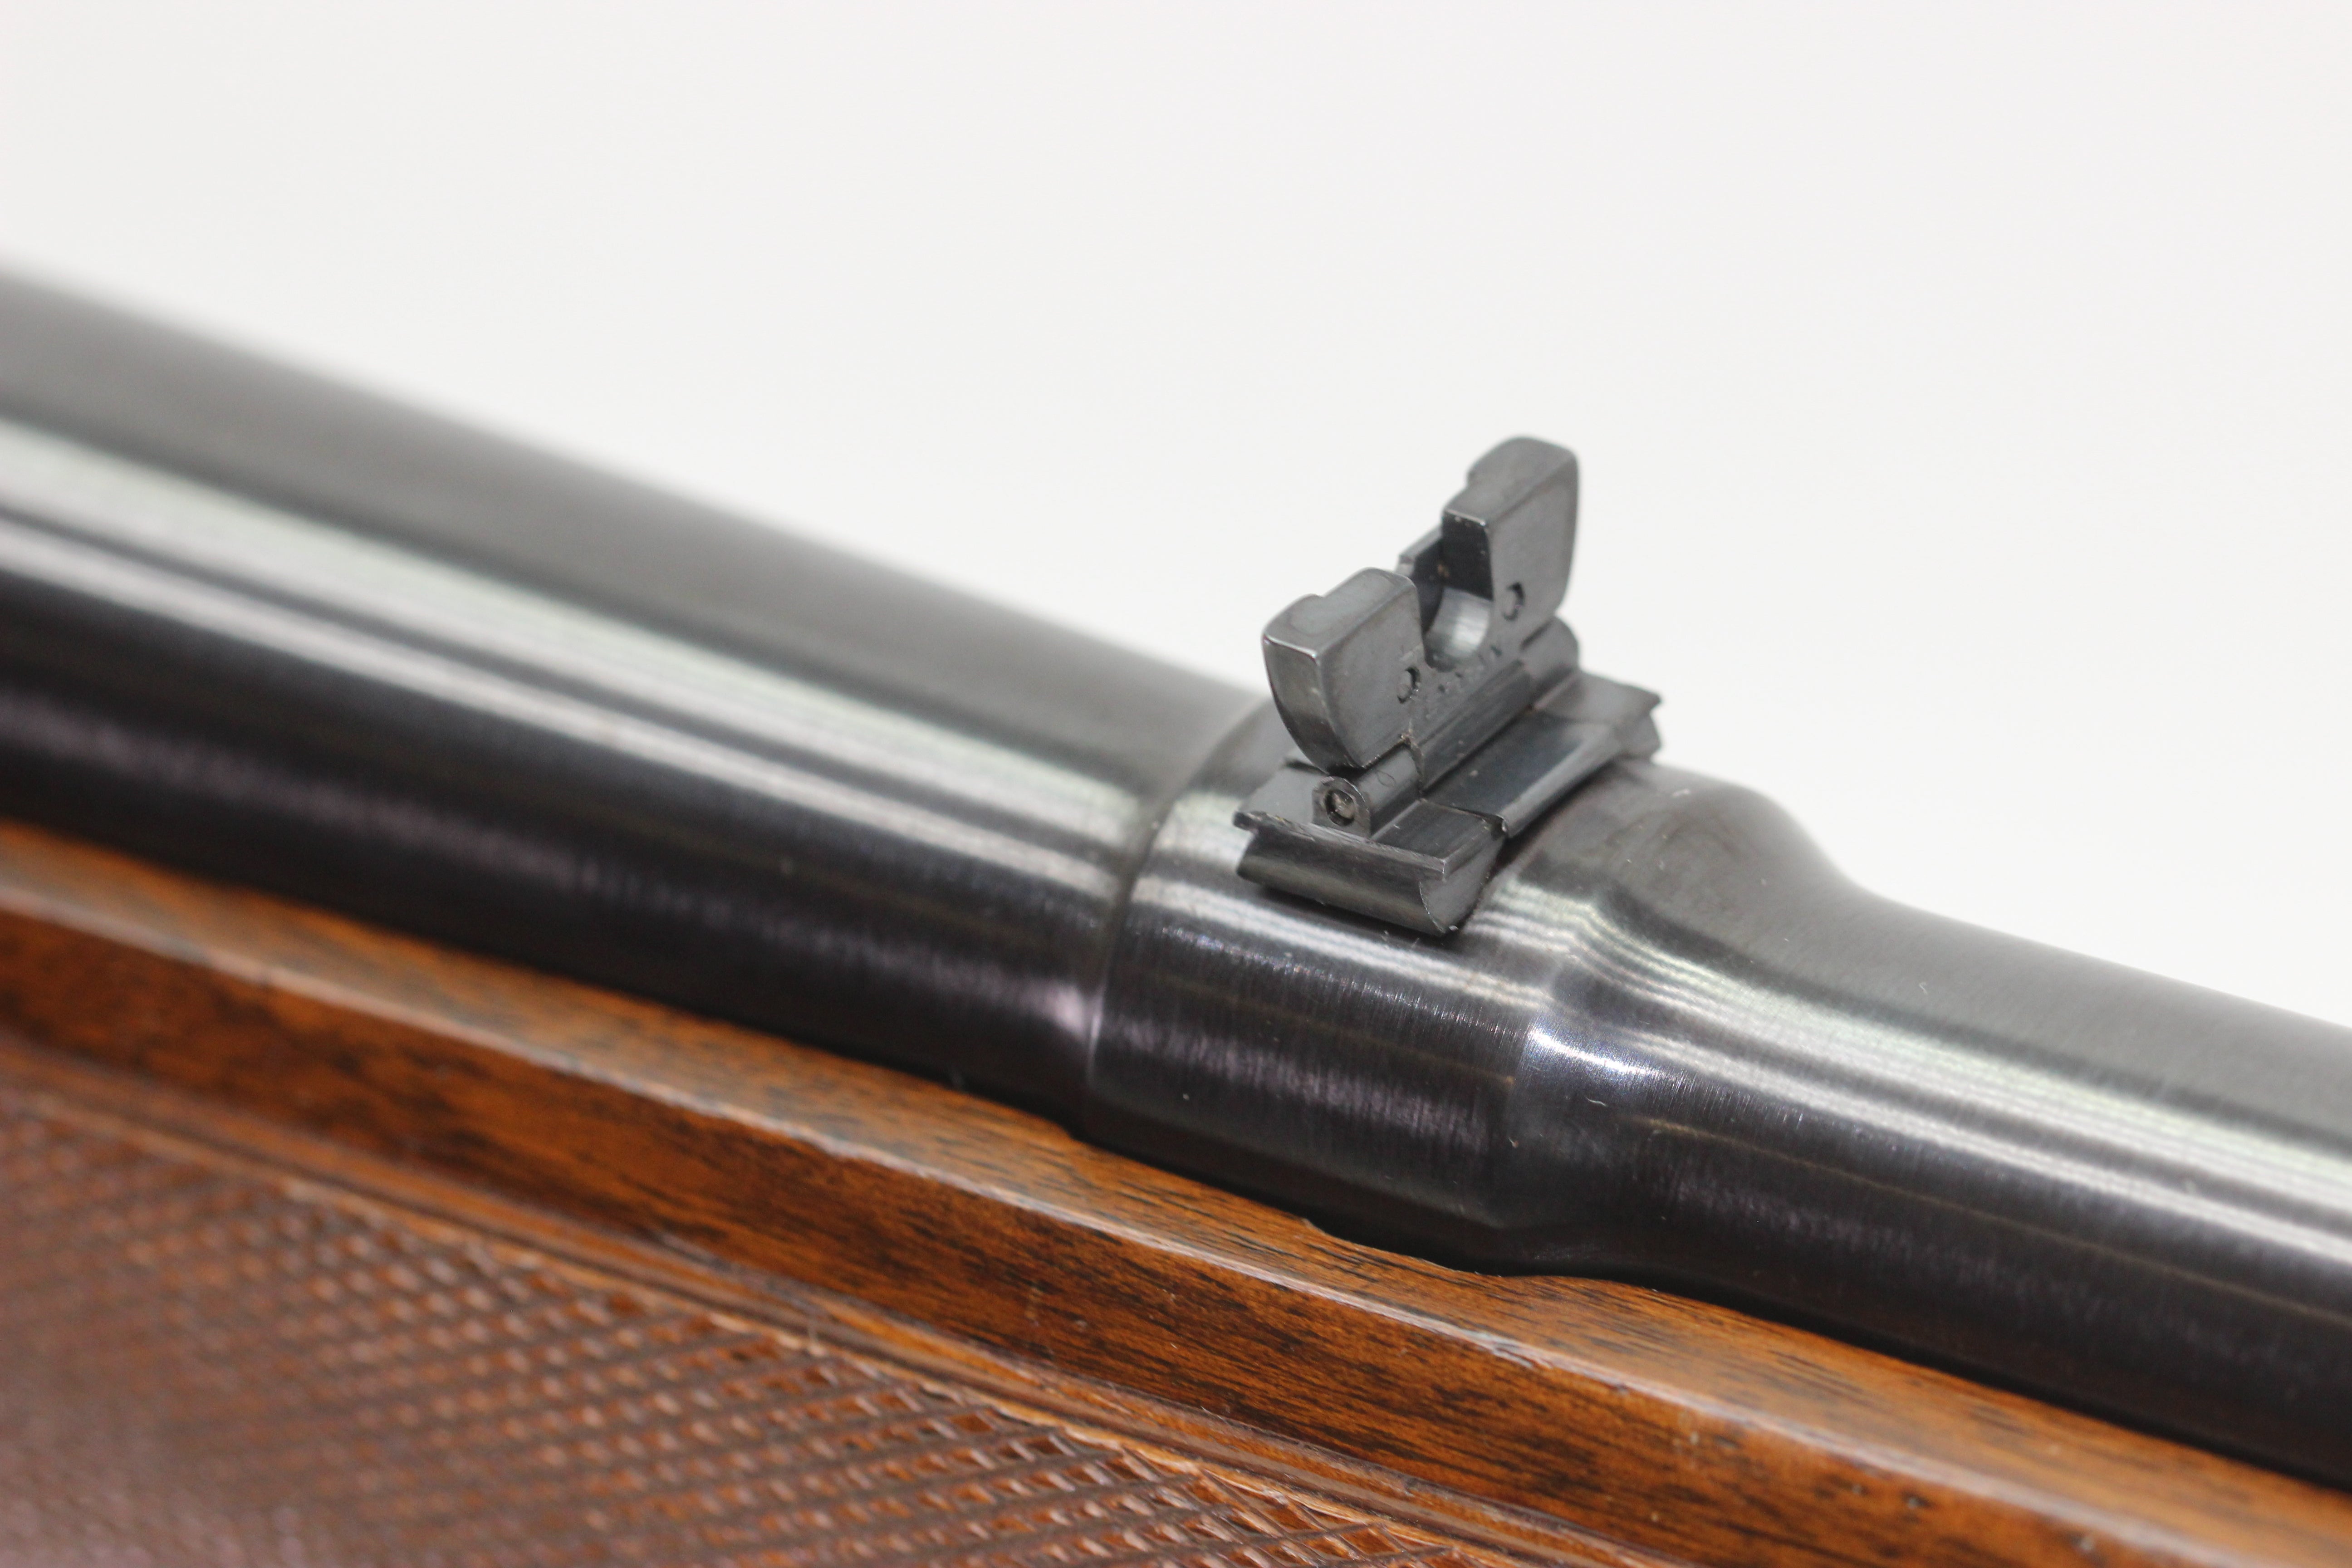 .300 H&H Mag Standard Rifle - 1955